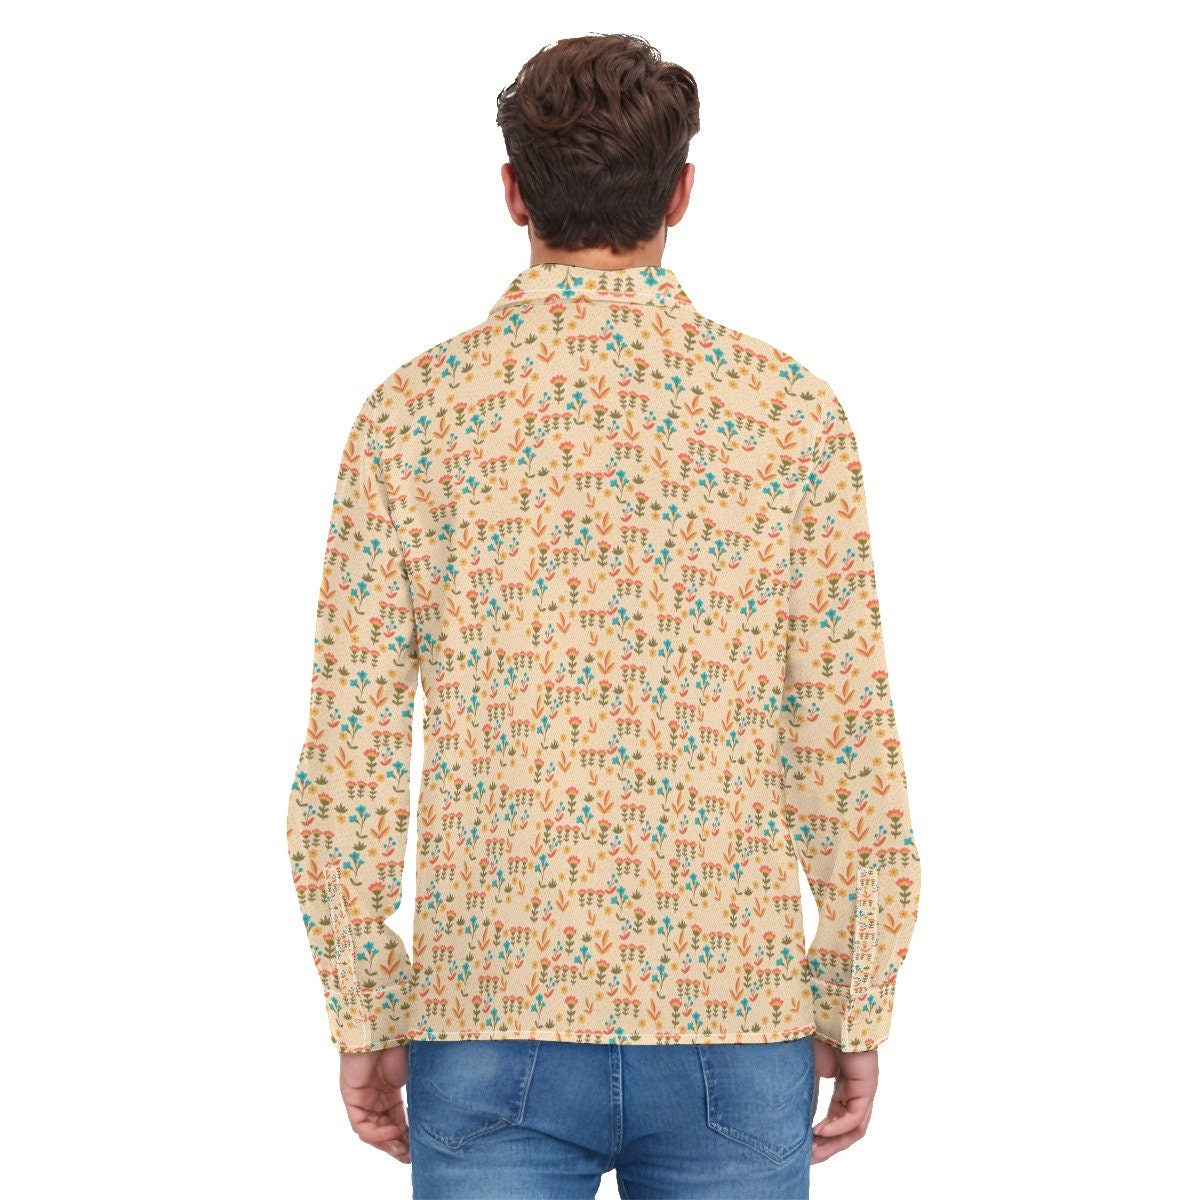 Vintage-Hemd im 70er-Jahre-Stil, beiges Hemd, Blumenhemd für Herren, 70er-Jahre-Kleidung für Herren, Retro-Hemd für Herren, Hippie-Hemd für Herren, 70er-Hemd für Herren, 70er-Jahre-inspiriertes Hemd